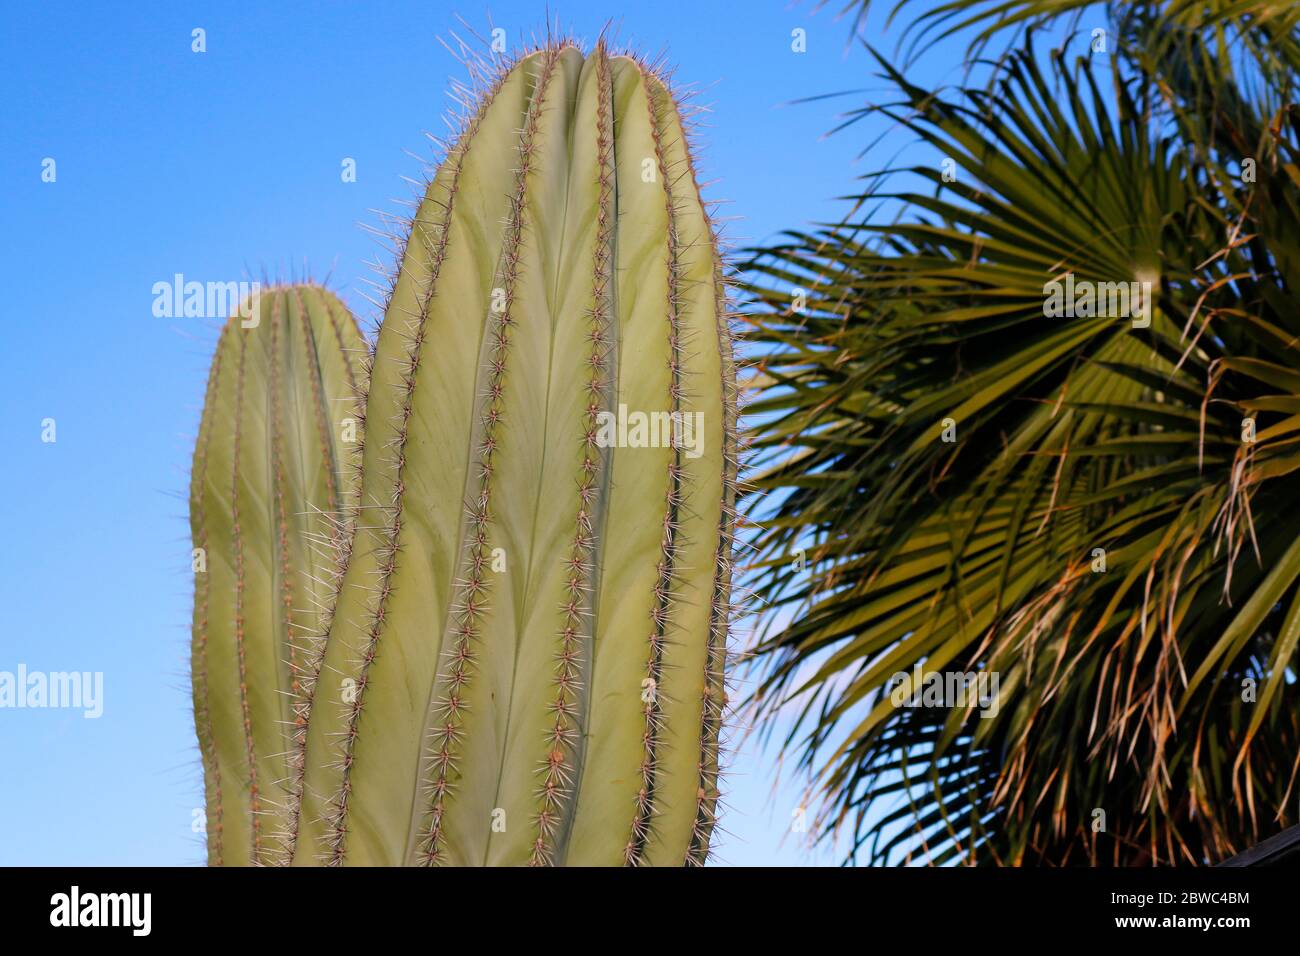 Kaktus, Caleta de Fuste, Fuerteventura, Kanarische Inseln, Spanien/ Fuerteventura, Canary Islands, Spain  (nur fuer redaktionelle Verwendung. Keine We Stock Photo